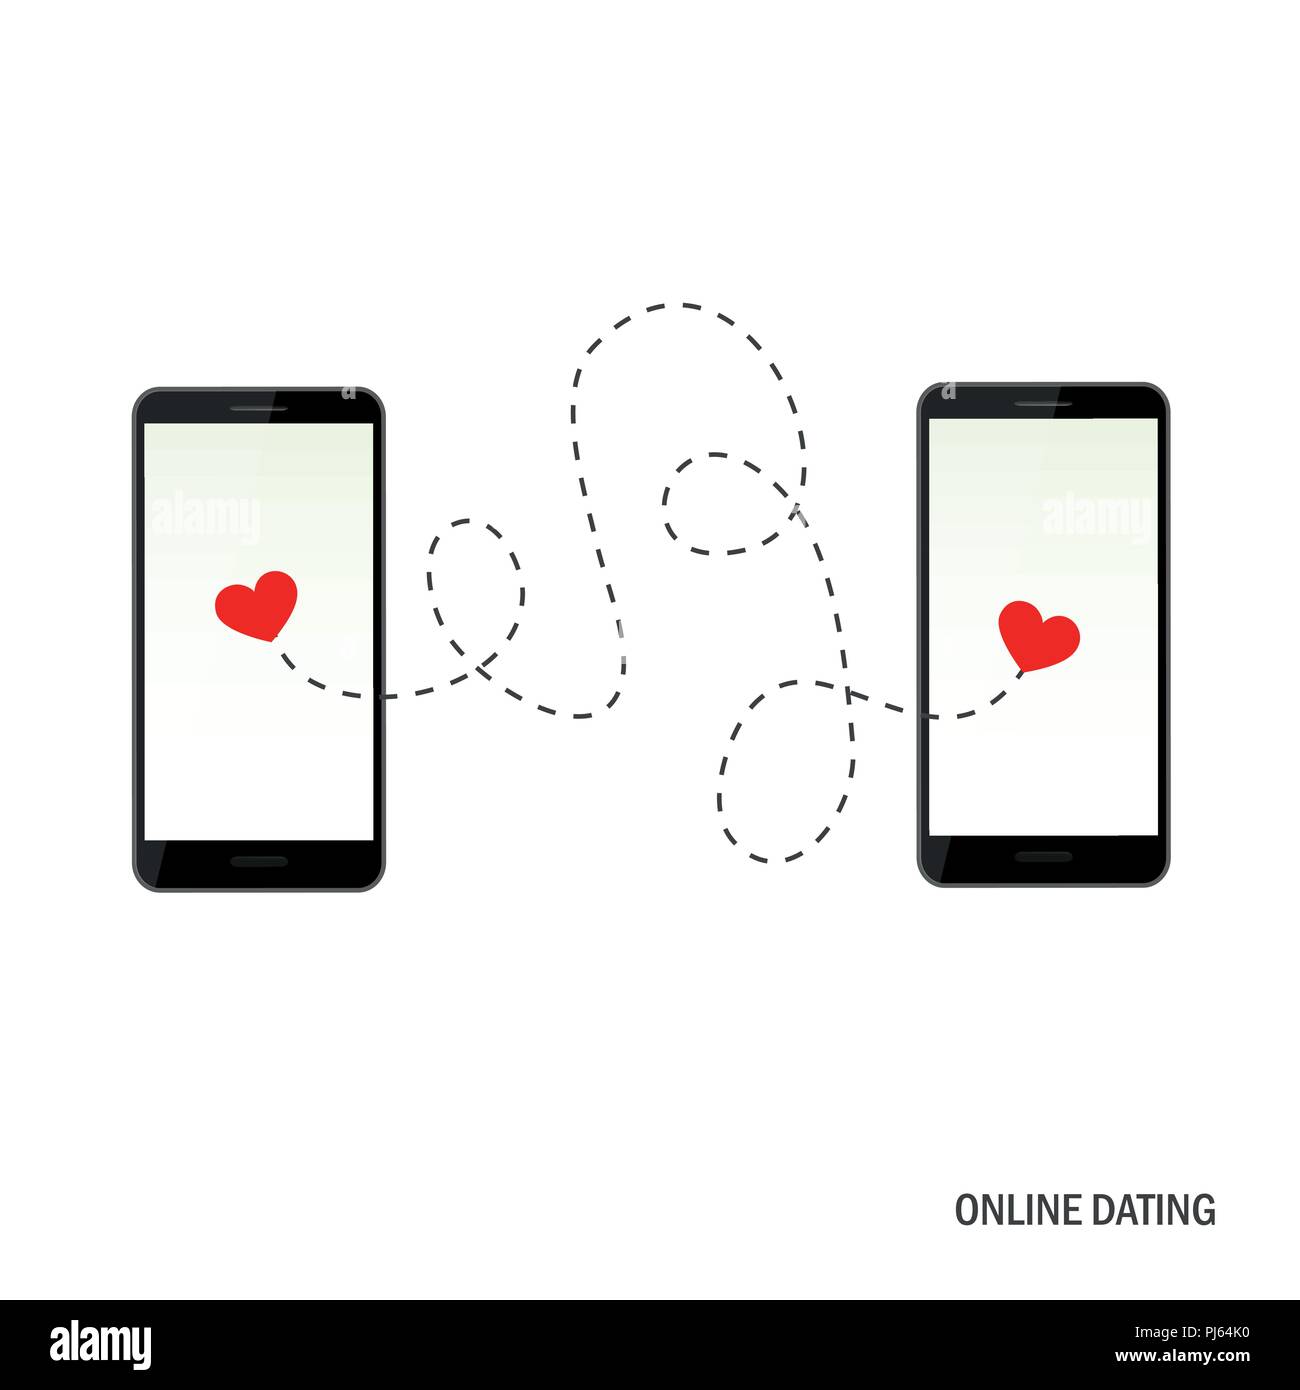 Online dating app concepto con dos corazones ilustración vectorial EPS10 Ilustración del Vector